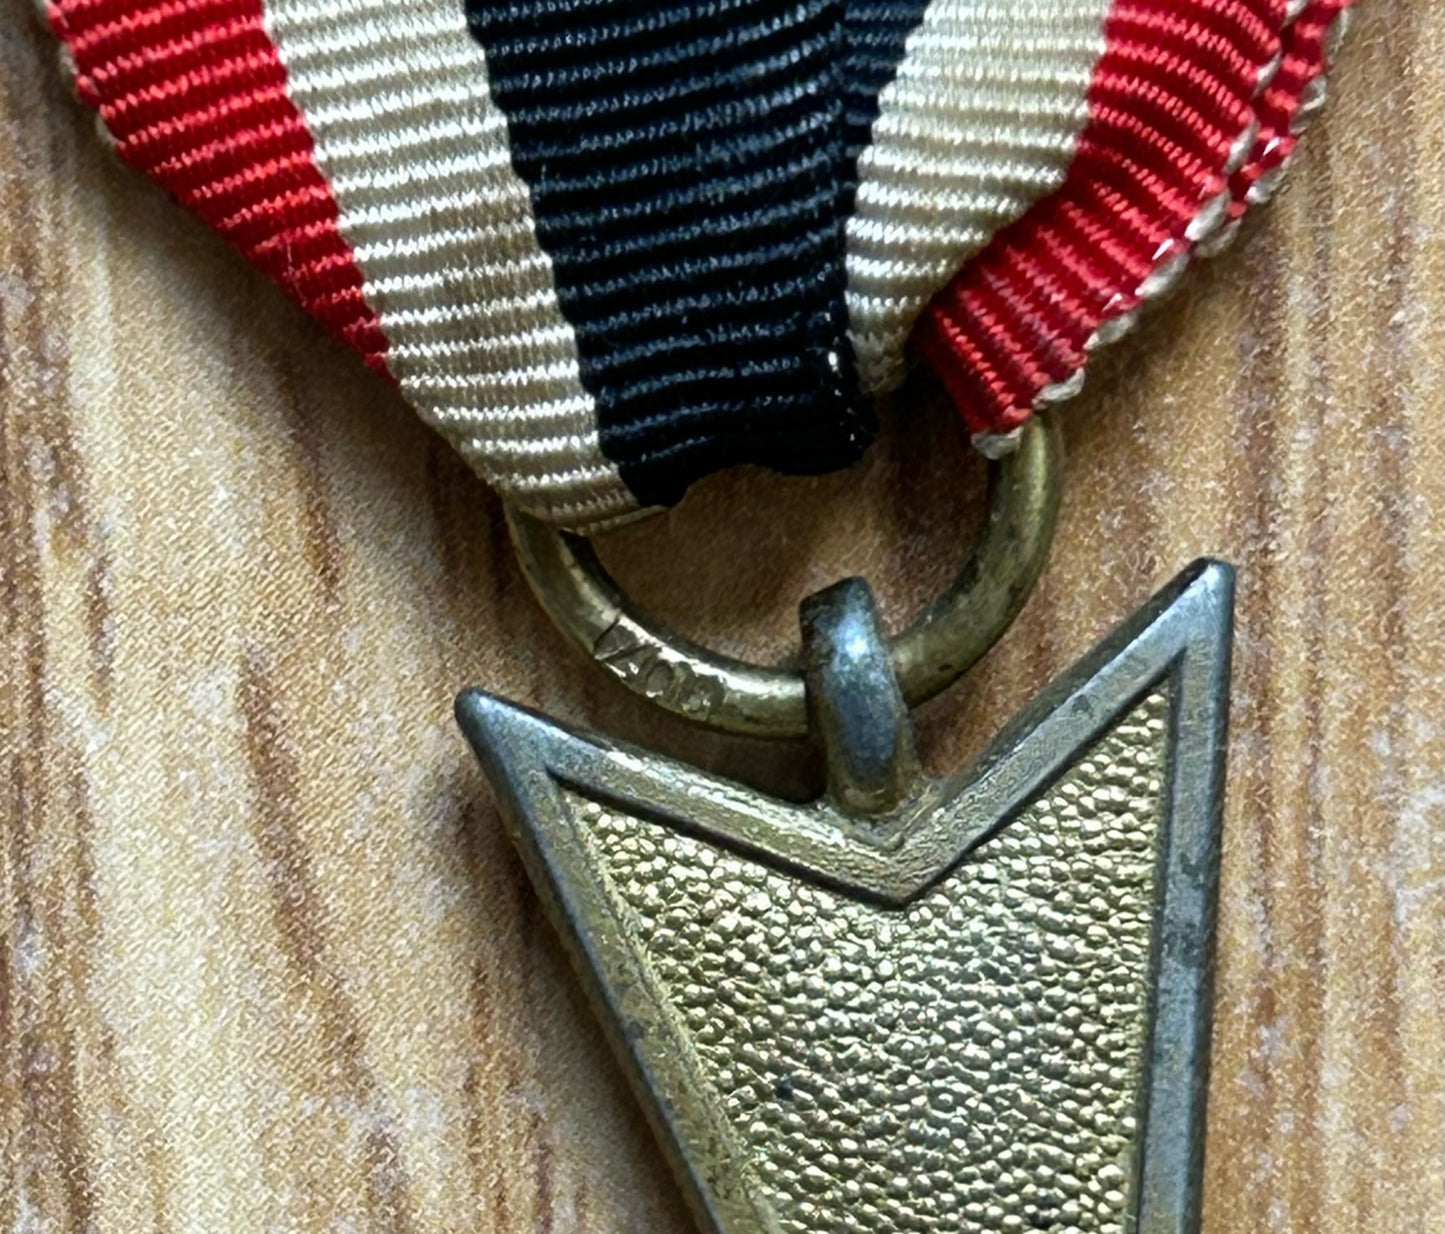 War Merit Cross 2nd Class without Swords - Maker marked 107